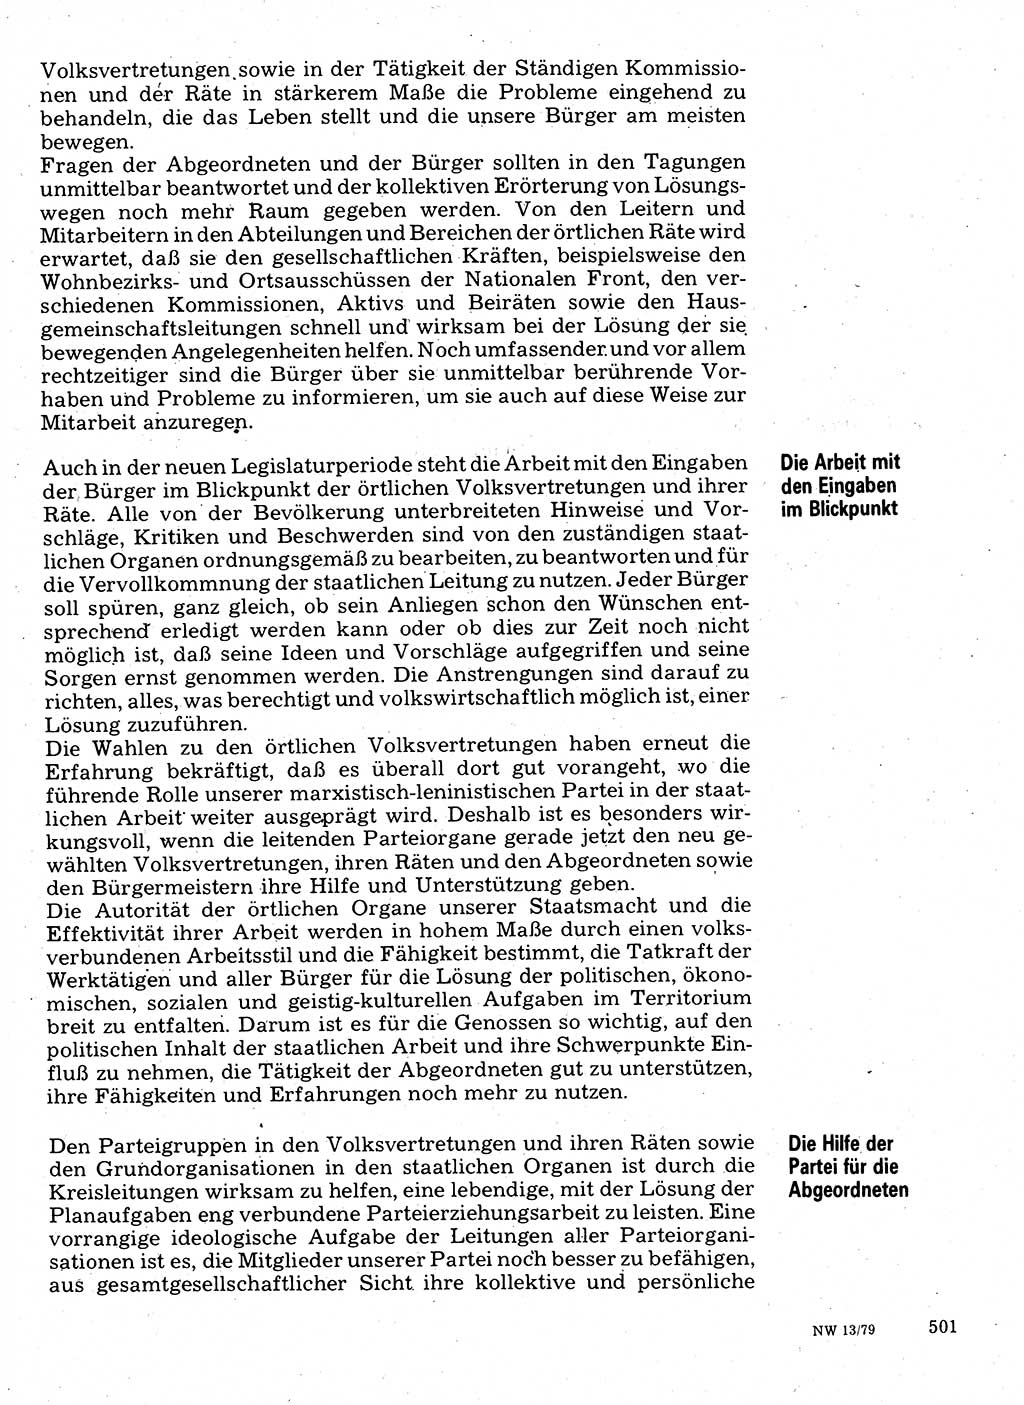 Neuer Weg (NW), Organ des Zentralkomitees (ZK) der SED (Sozialistische Einheitspartei Deutschlands) für Fragen des Parteilebens, 34. Jahrgang [Deutsche Demokratische Republik (DDR)] 1979, Seite 501 (NW ZK SED DDR 1979, S. 501)